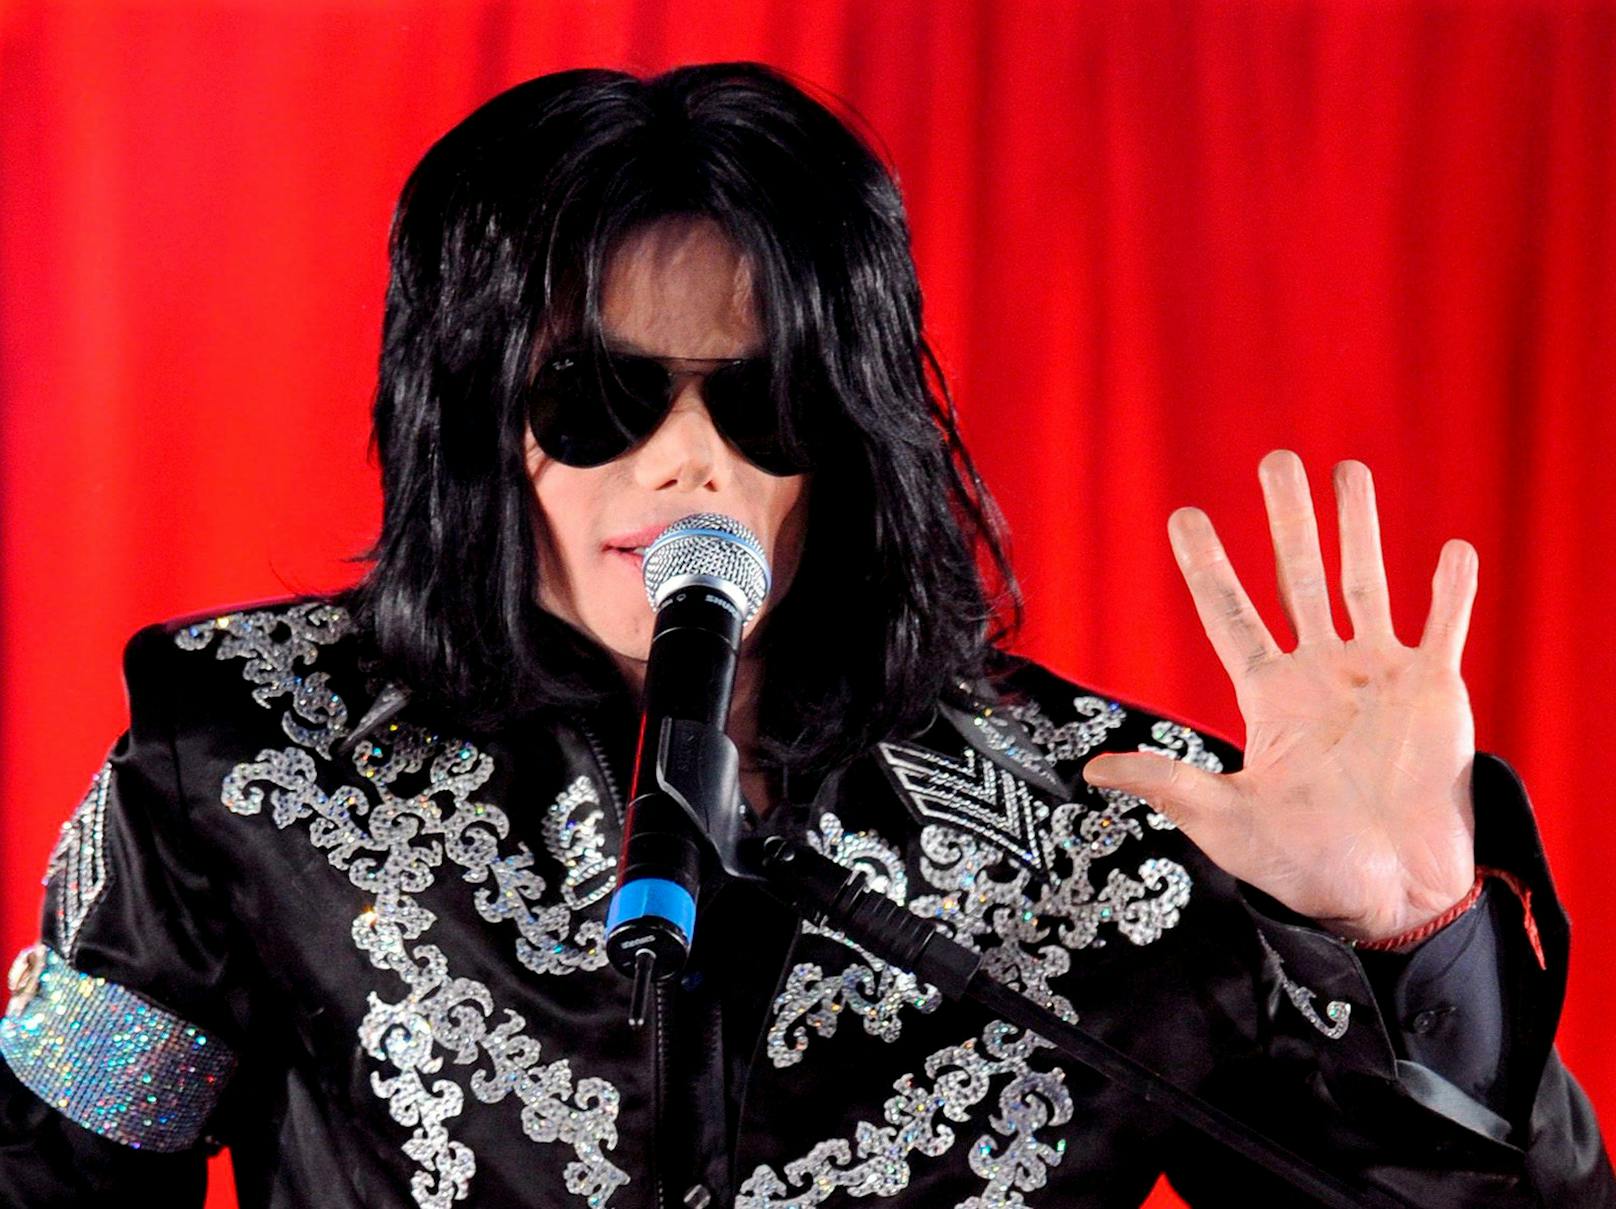 Michael Jackson verstarb am 25. Juni 2009 im Alter von 50 Jahren an einer akuten Vergiftung durch das Narkotikum Propofol in Verbindung mit anderen verschreibungspflichtigen Medikamenten.